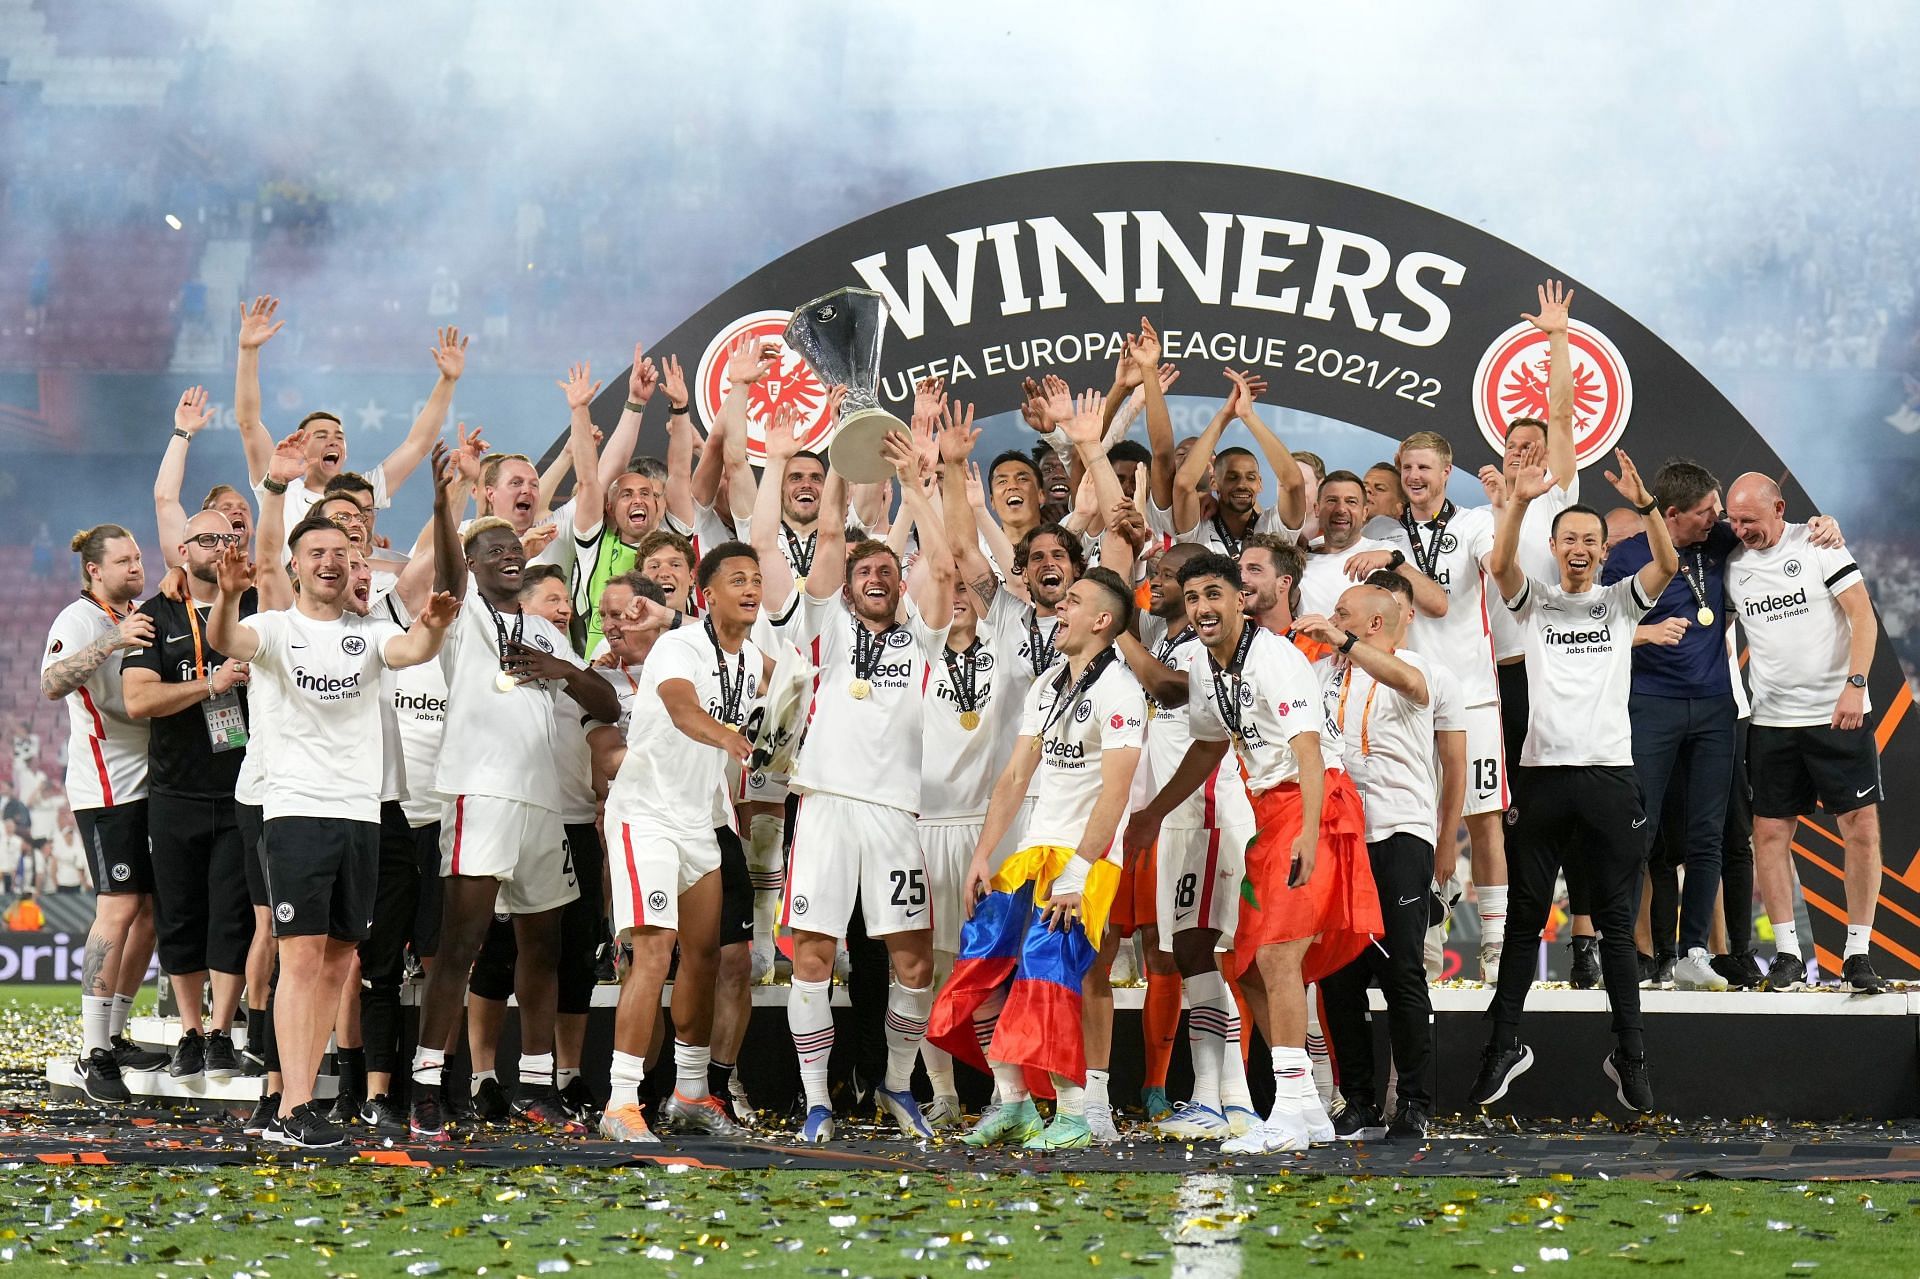 फ्रैंकफर्ट की टीम ने इस जीत के साथ अगले सीजन की चैंपियंस लीग ग्रुप स्टेज में जगह बना ली है।